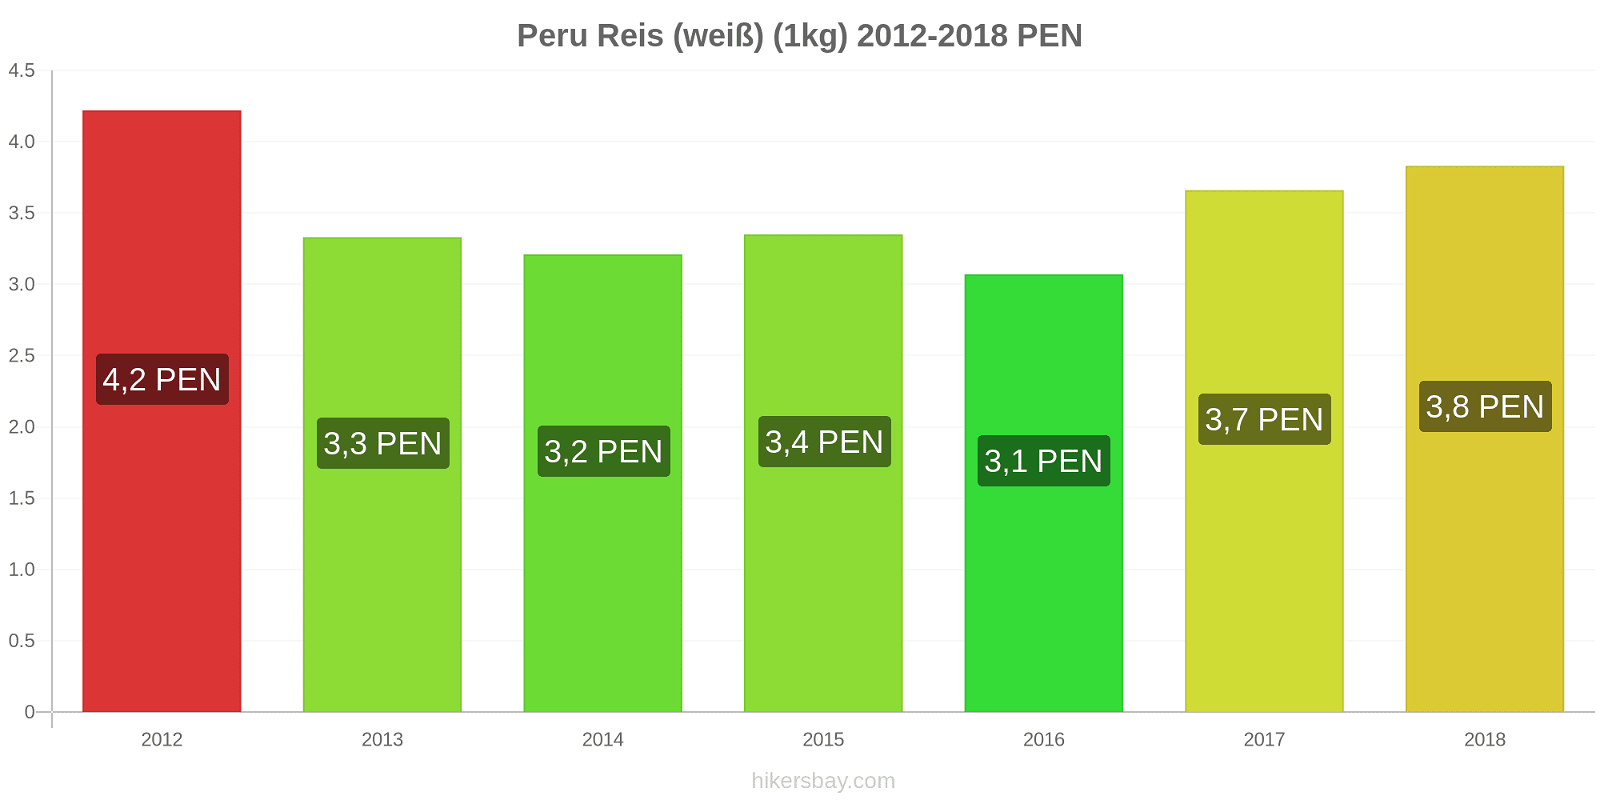 Peru Preisänderungen Reis (weiß) (1kg) hikersbay.com